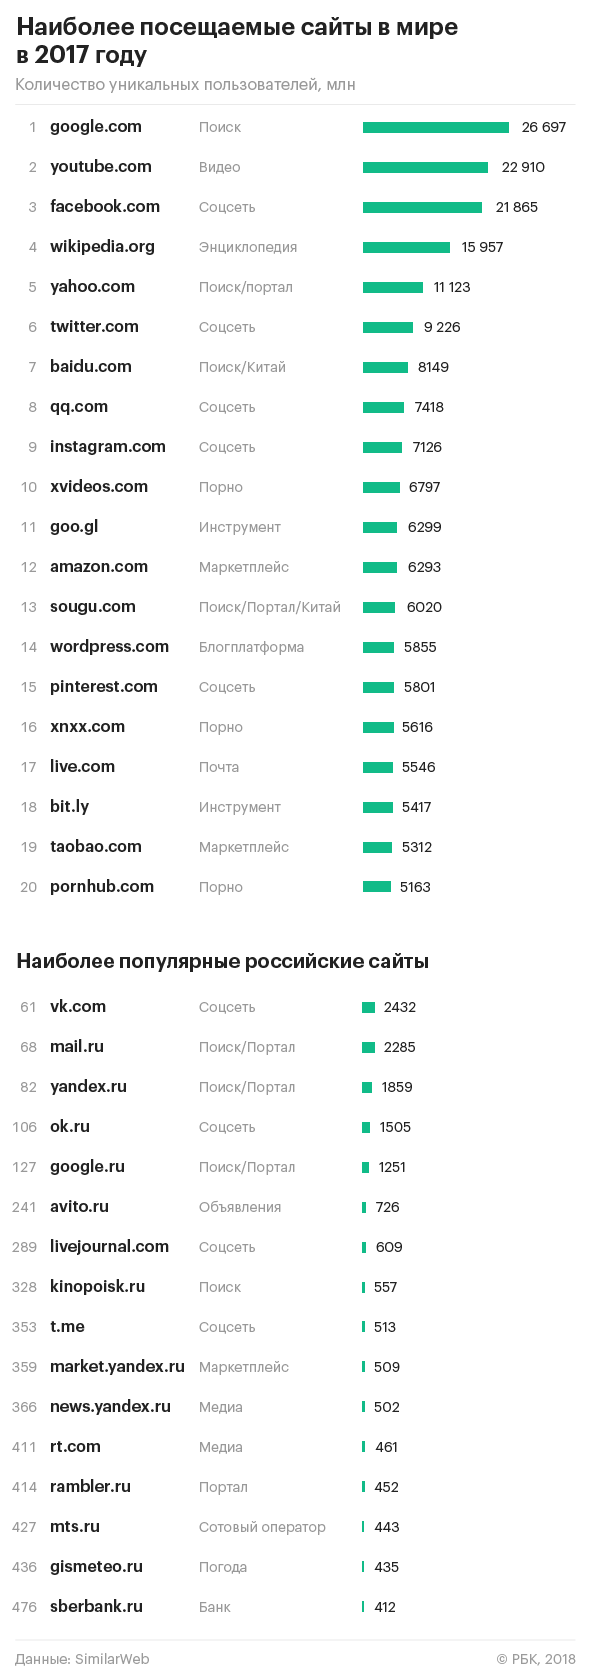 Три российских сайта вошли в сотню самых популярных в мире